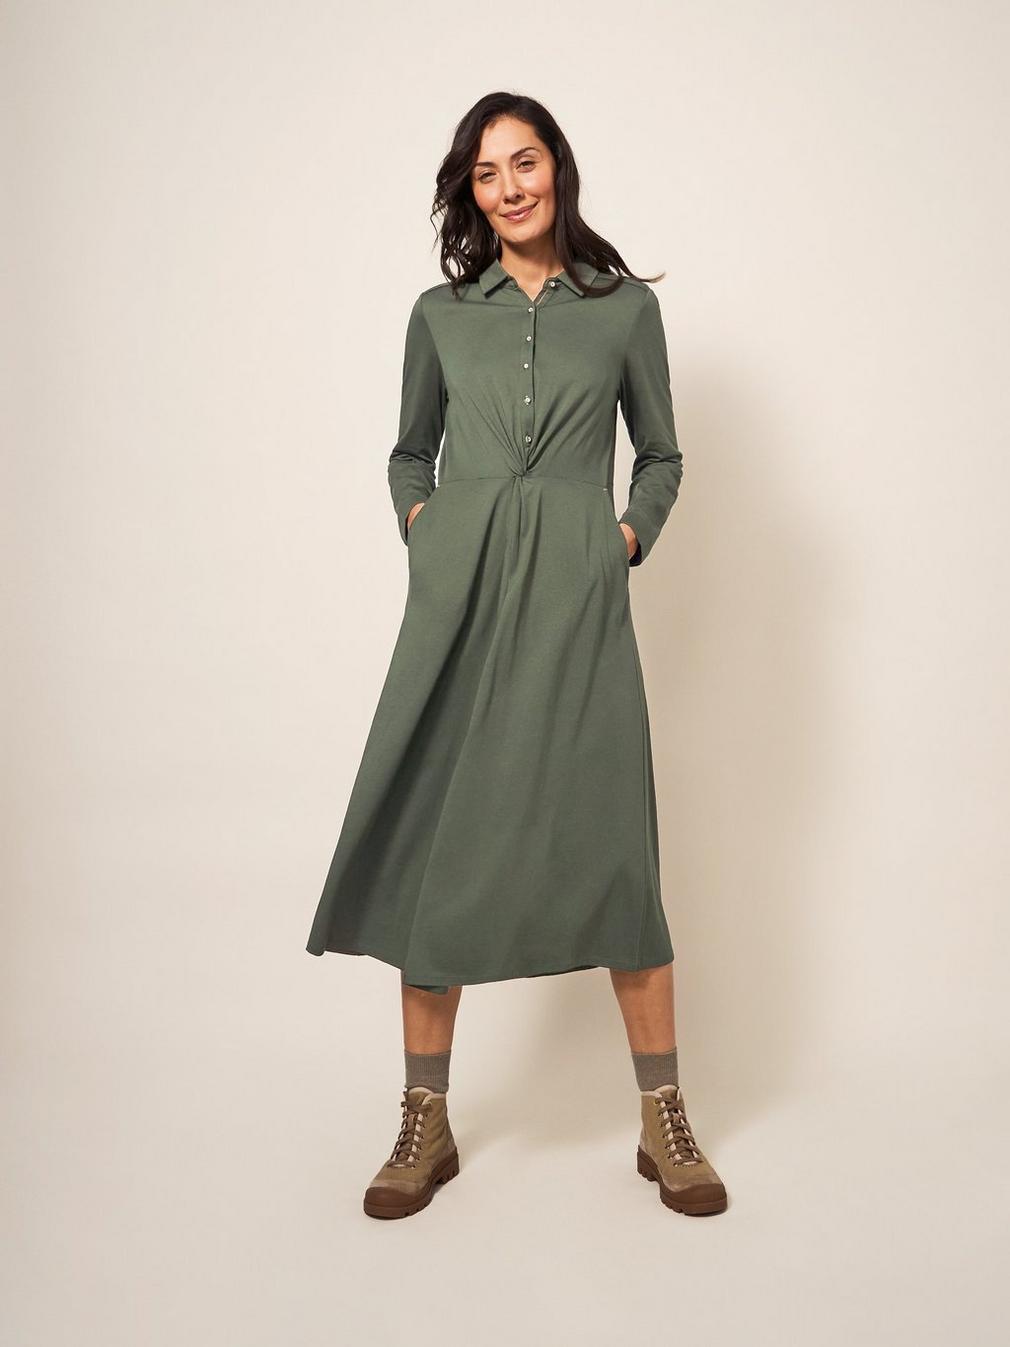 Jane Jersey Shirt Dress in DK GREEN - MODEL FRONT